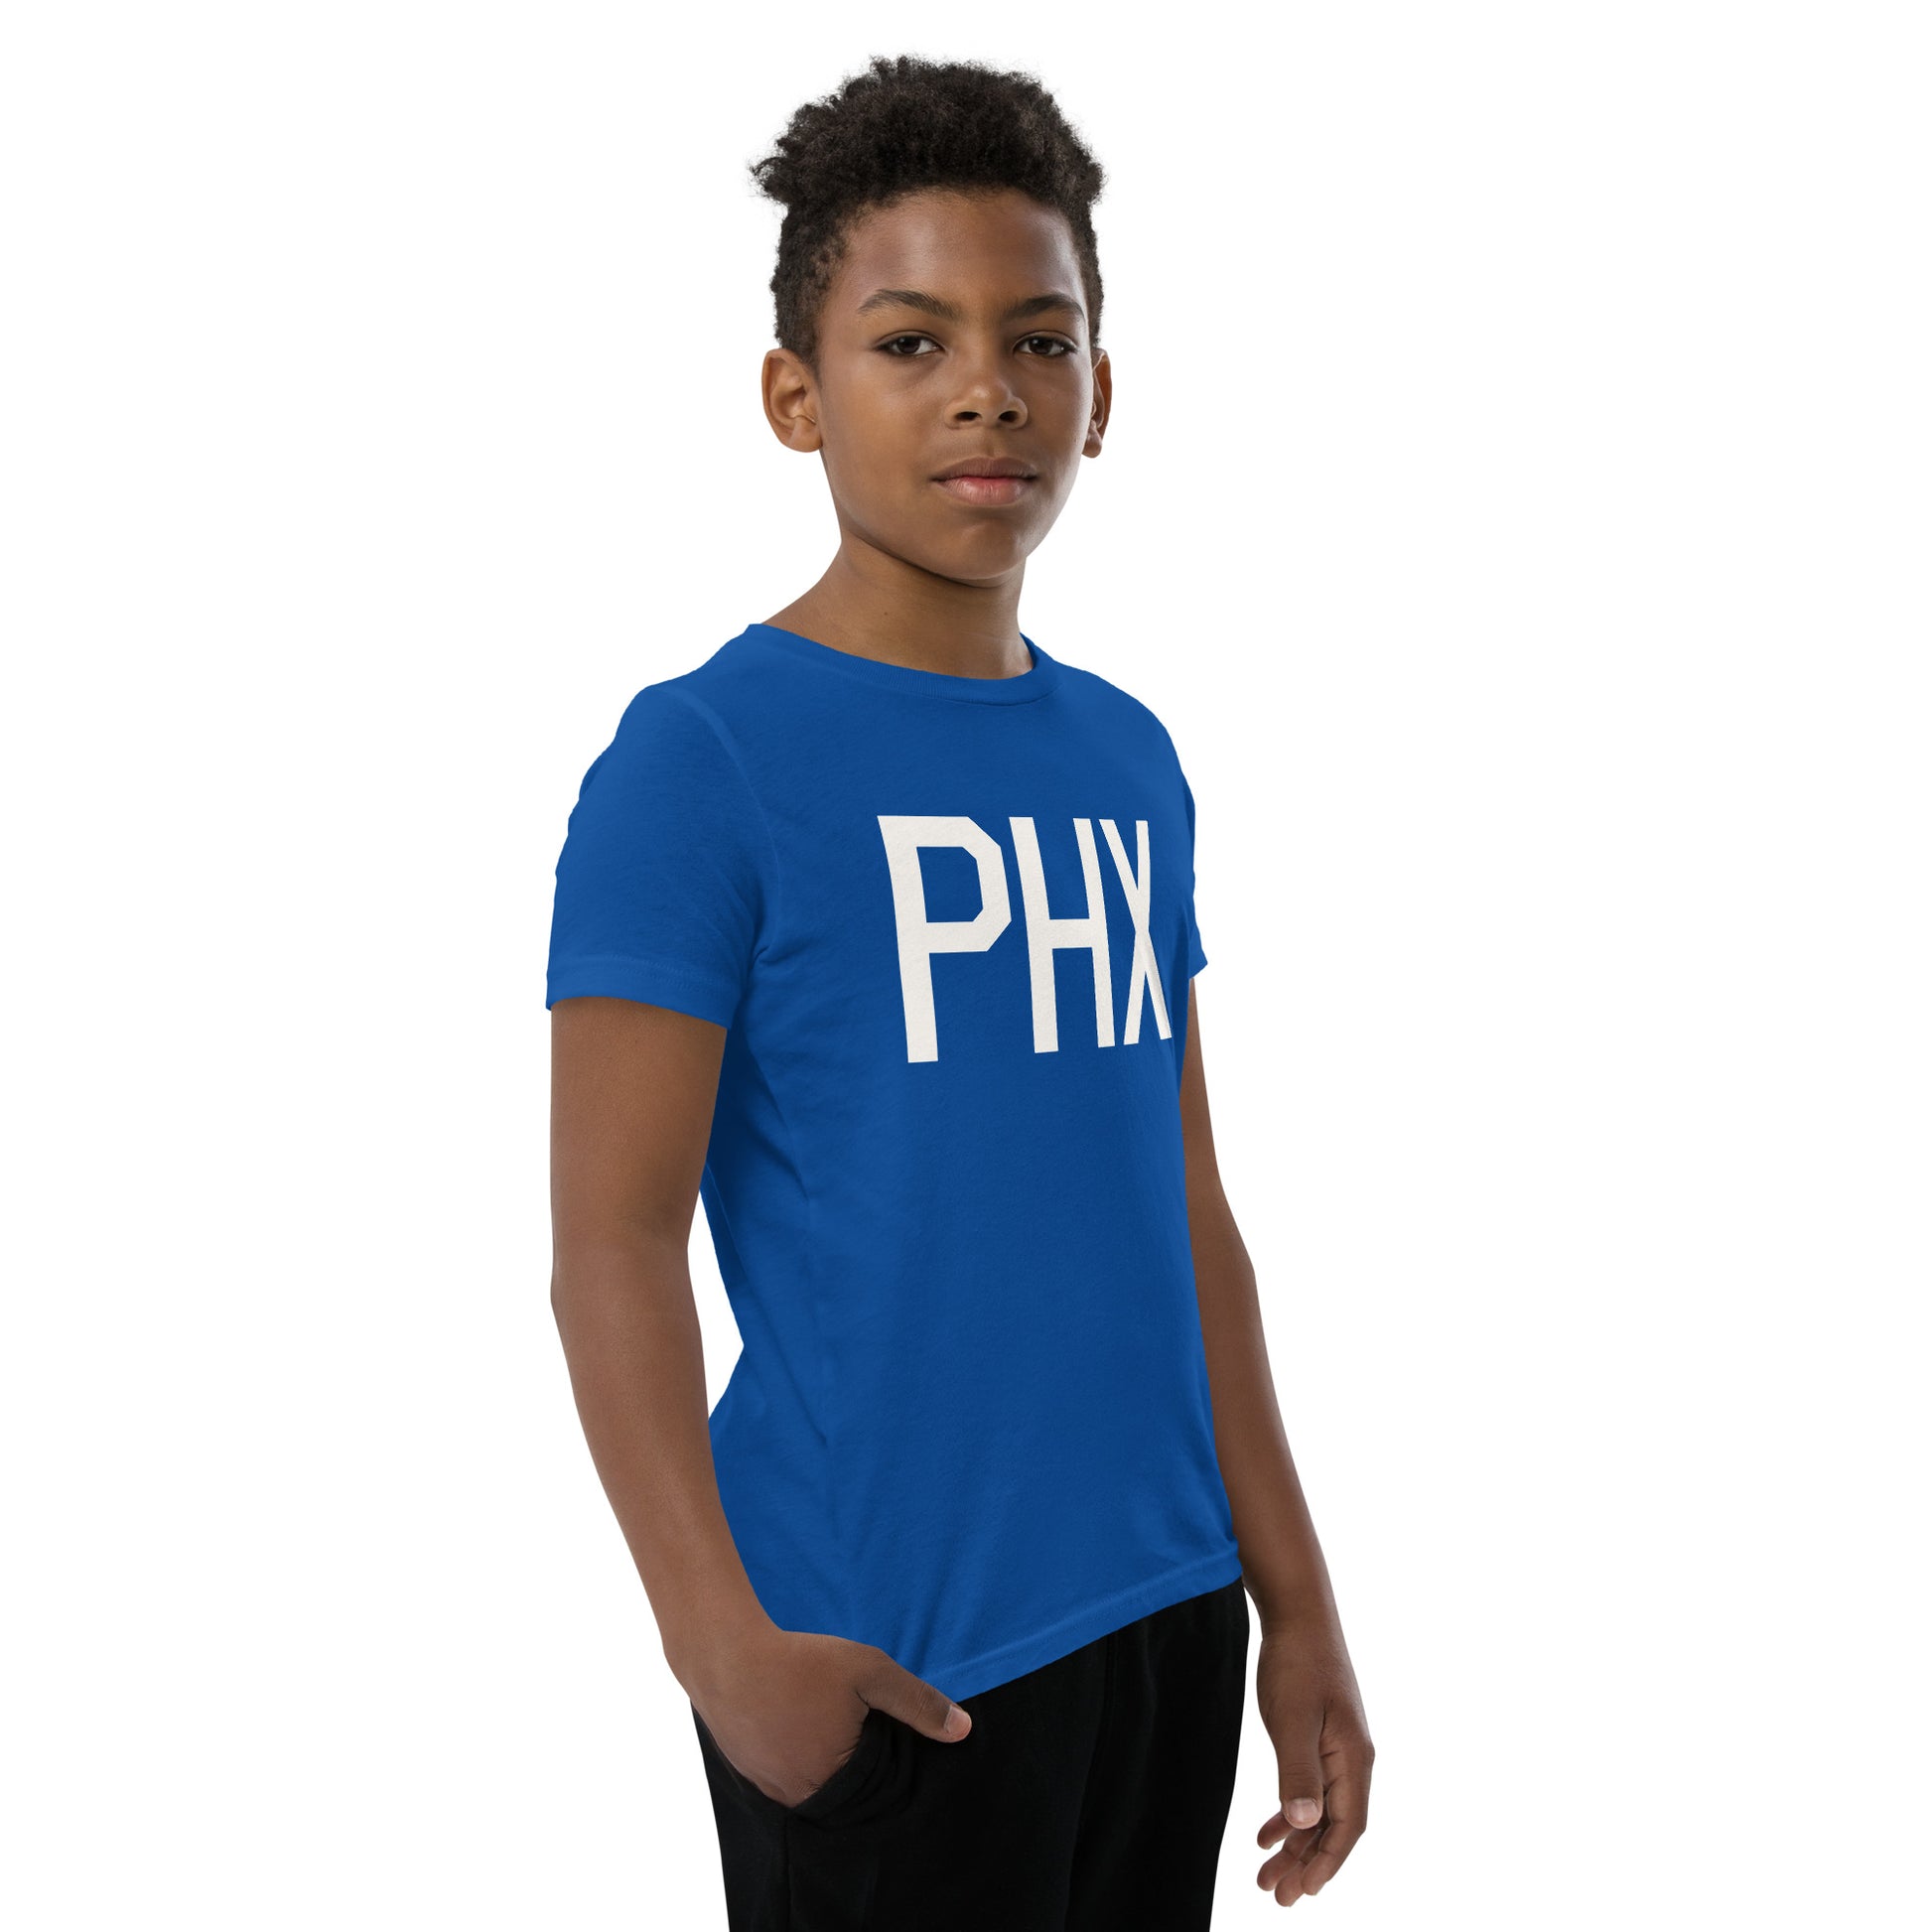 Kid's T-Shirt - White Graphic • PHX Phoenix • YHM Designs - Image 12